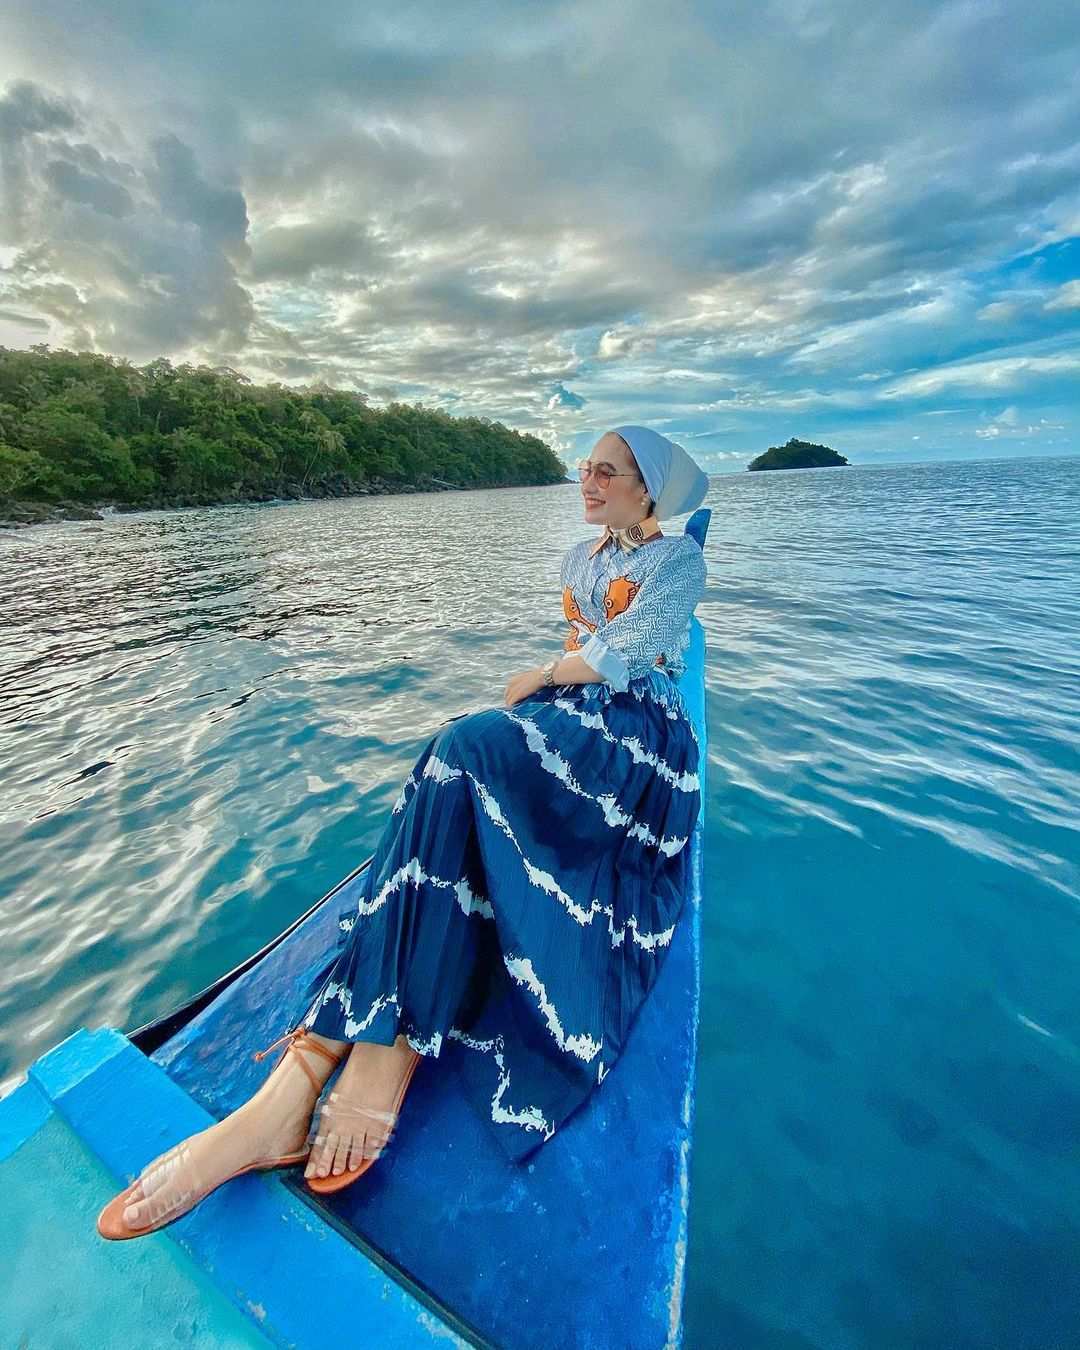 Berfoto di Atas Kapal di Pulau Rubiah, Image From @fitriyyani_